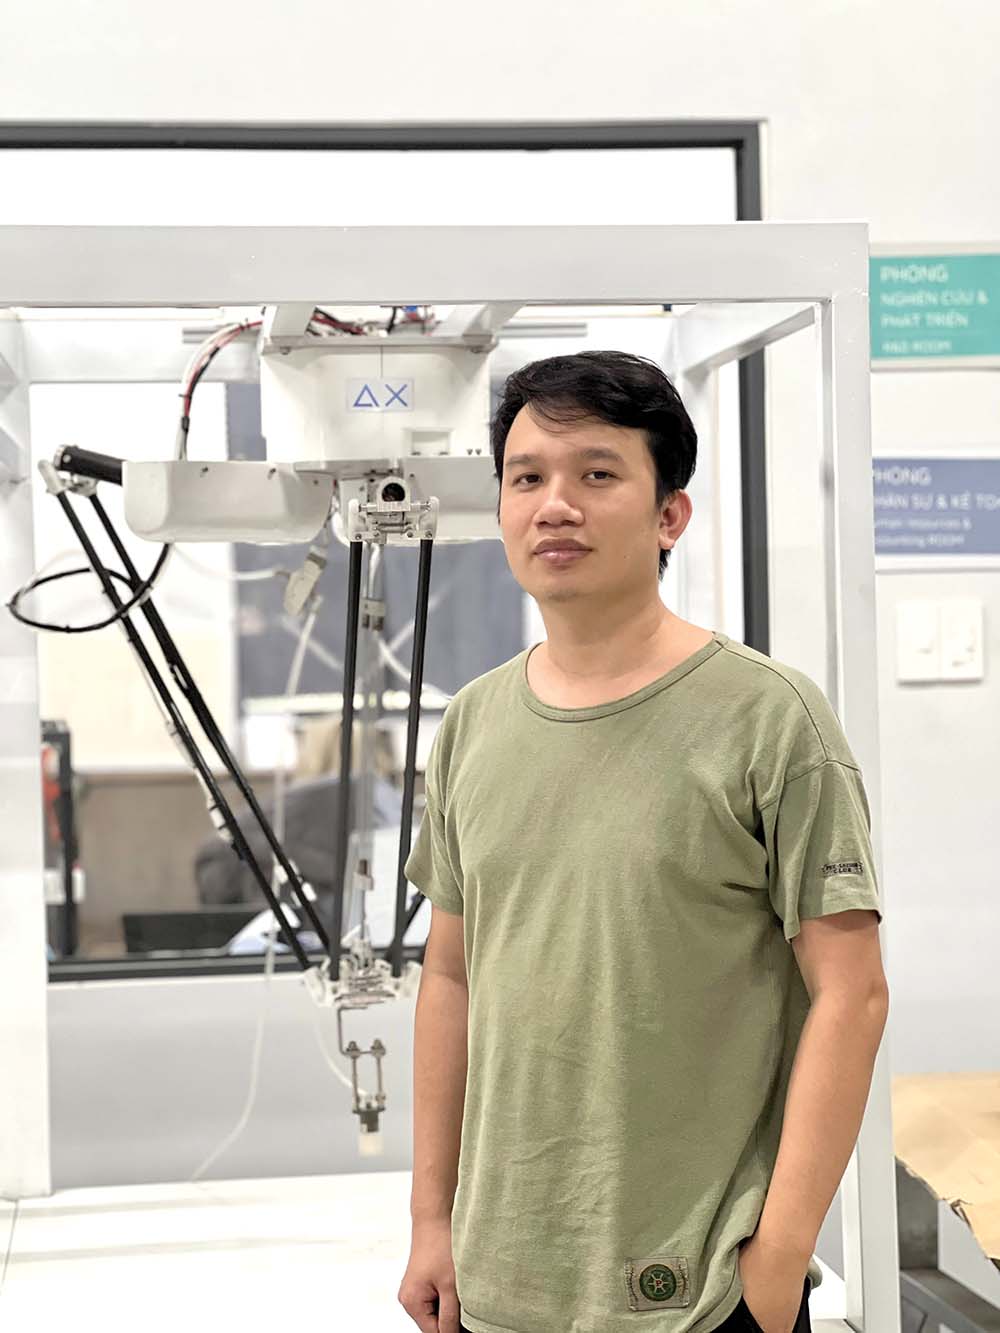 Trải qua 5 năm phát triển, Delta X đã cho ra đời 3 mẫu robot Delta made in Vietnam, trong đó doanh nghiệp tự chủ hoàn toàn từ khâu thiết kế, sản xuất cho tới bán hàng.